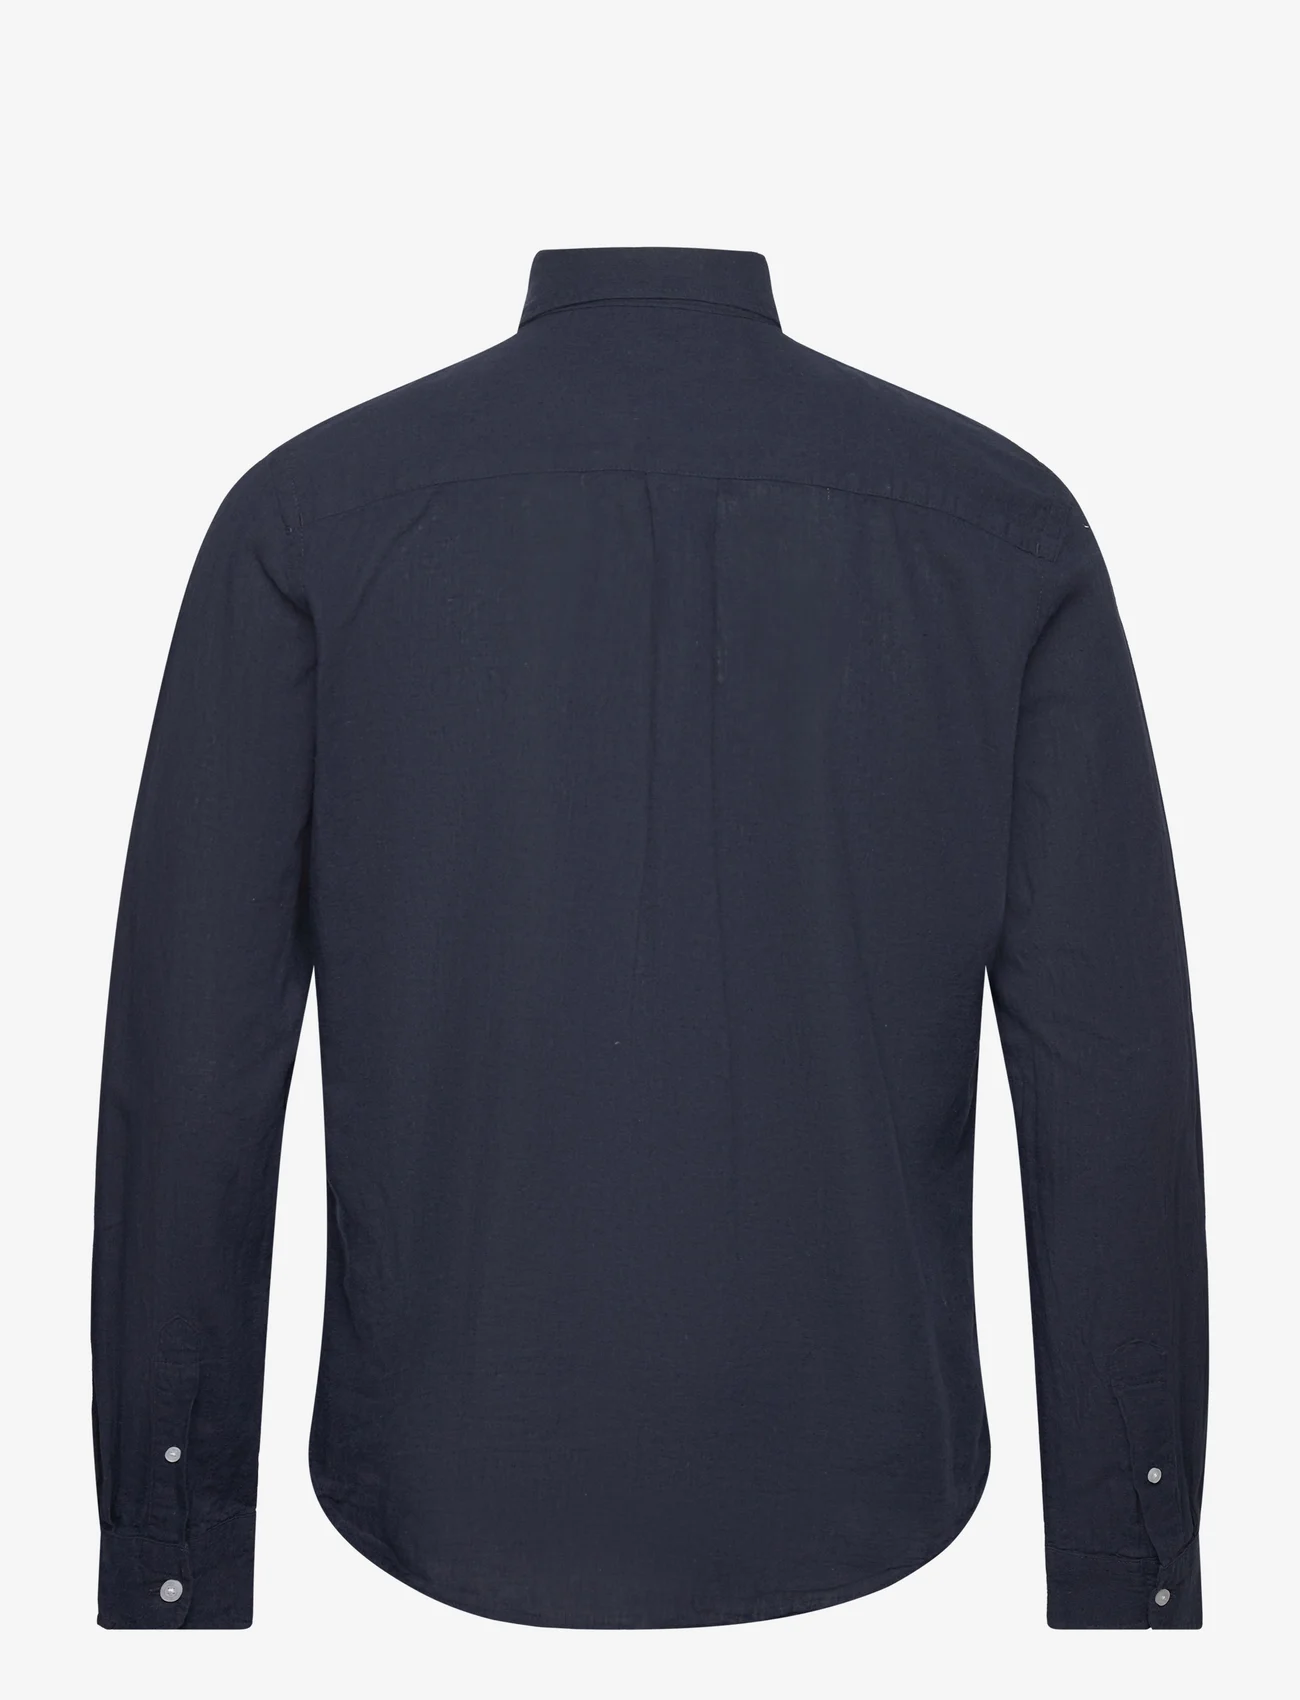 U.S. Polo Assn. - USPA Shirt Bolt Men - linen shirts - dark sapphire - 1